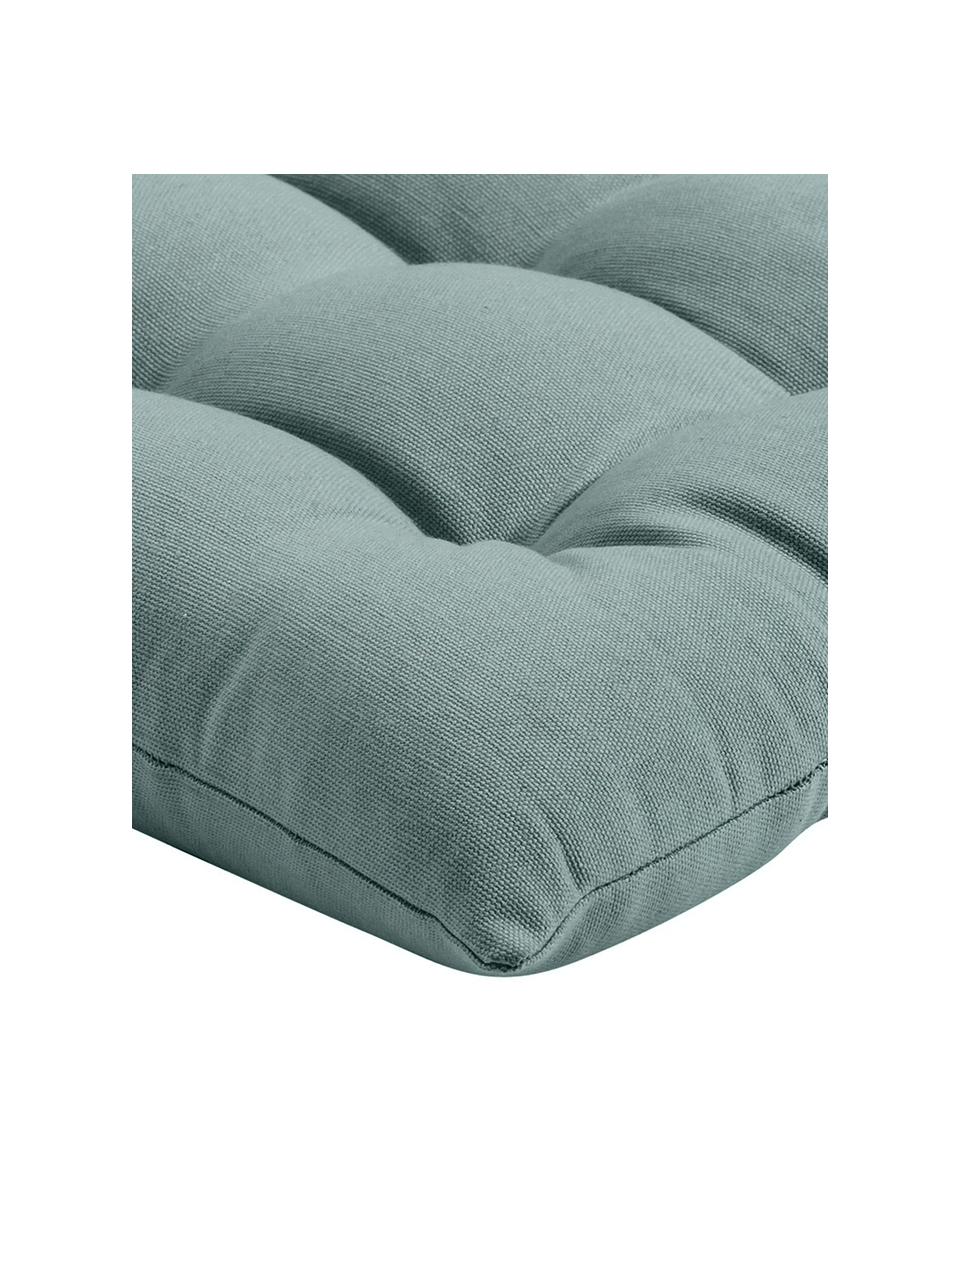 Baumwoll-Sitzkissen Ava in Salbeigrün, Bezug: 100% Baumwolle, Salbeigrün, B 40 x L 40 cm